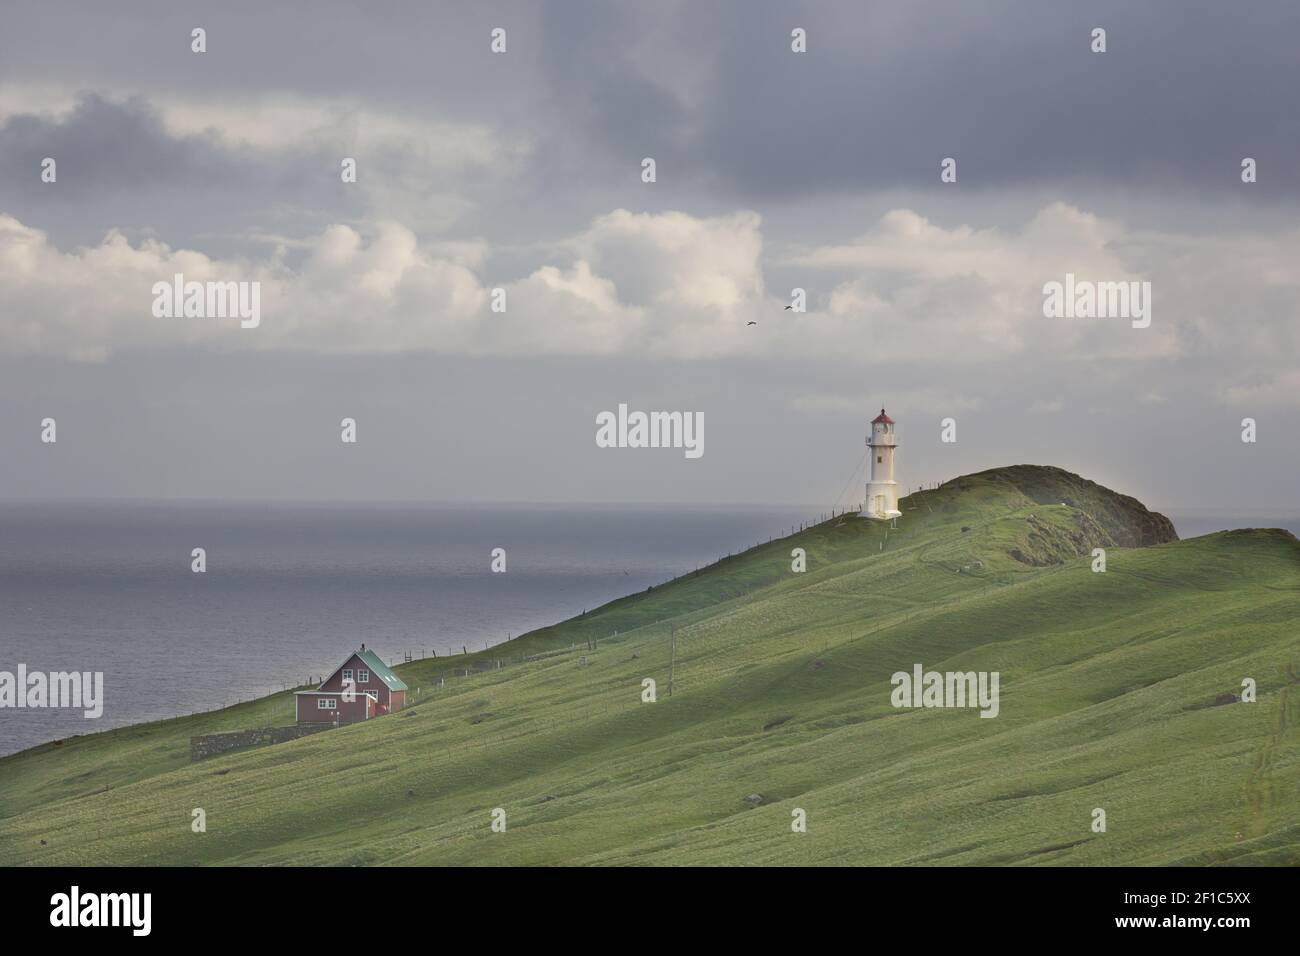 Schöne dramatische Landschaft auf den Färöern. wolkiger Himmel, Leuchtturm, Gras Stockfoto